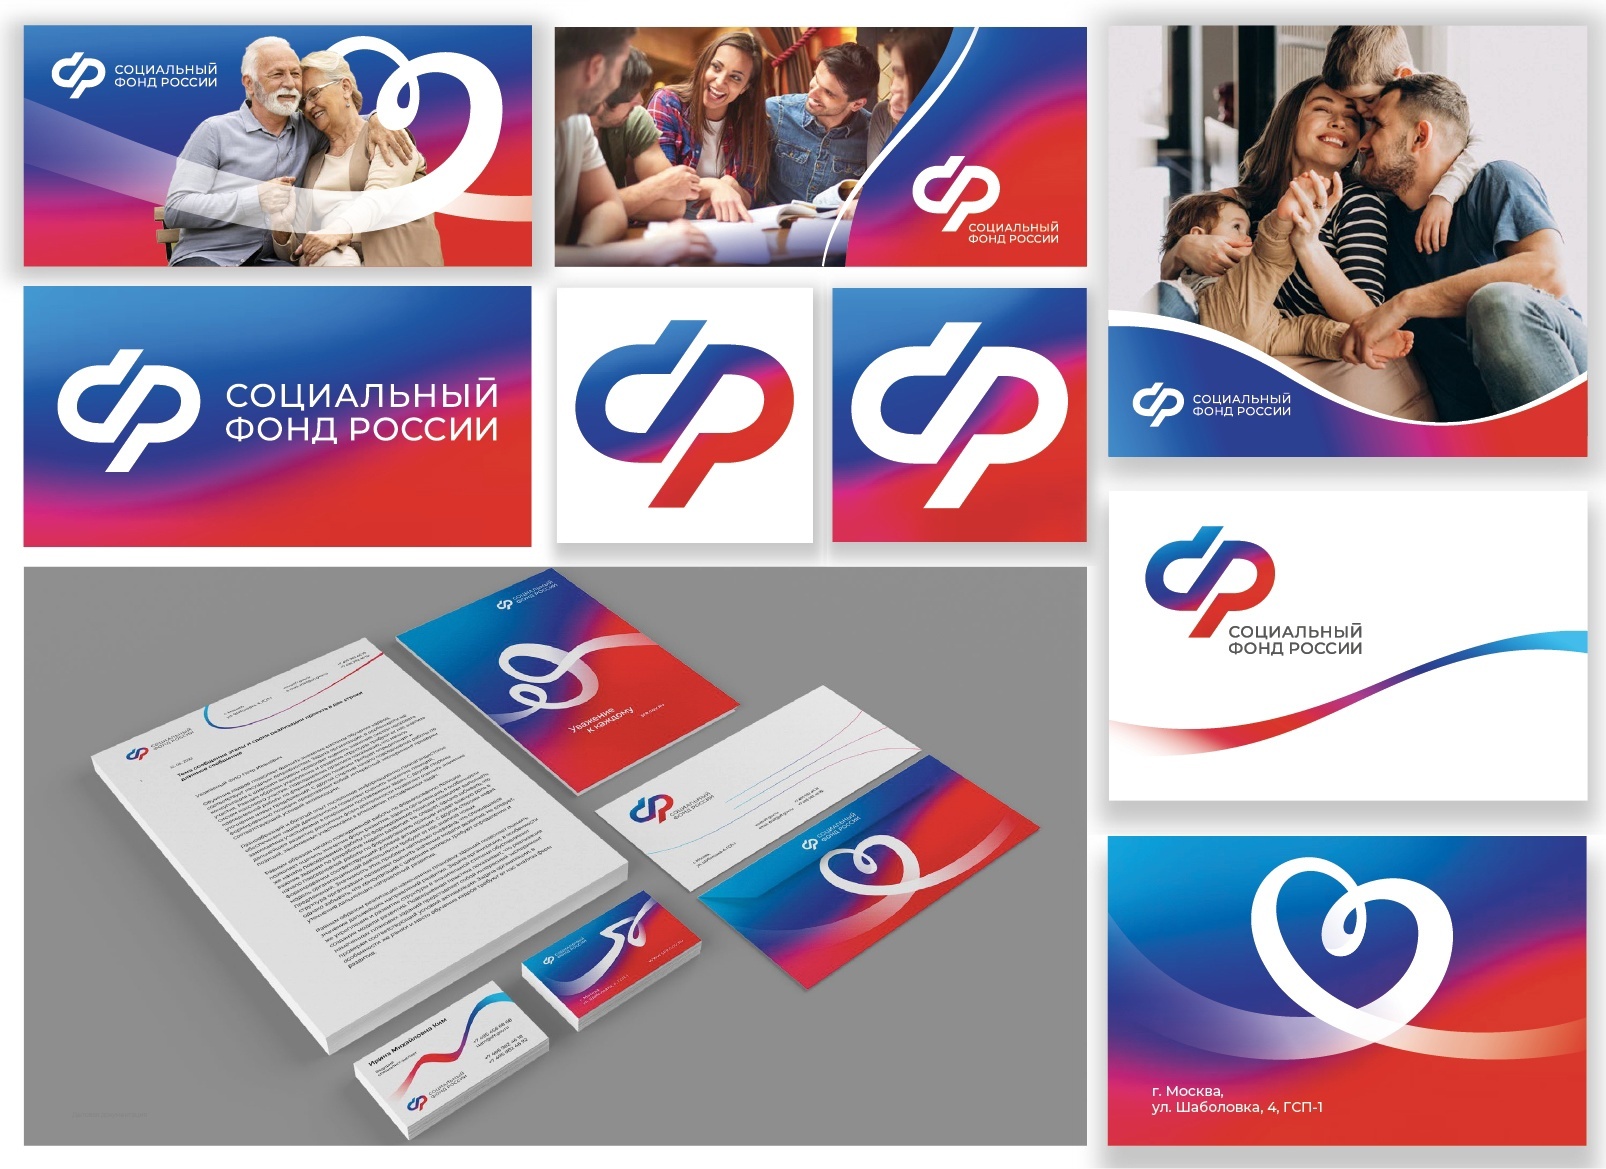 Социальный фонд России начнет свою работу с 2023 года под новым логотипом